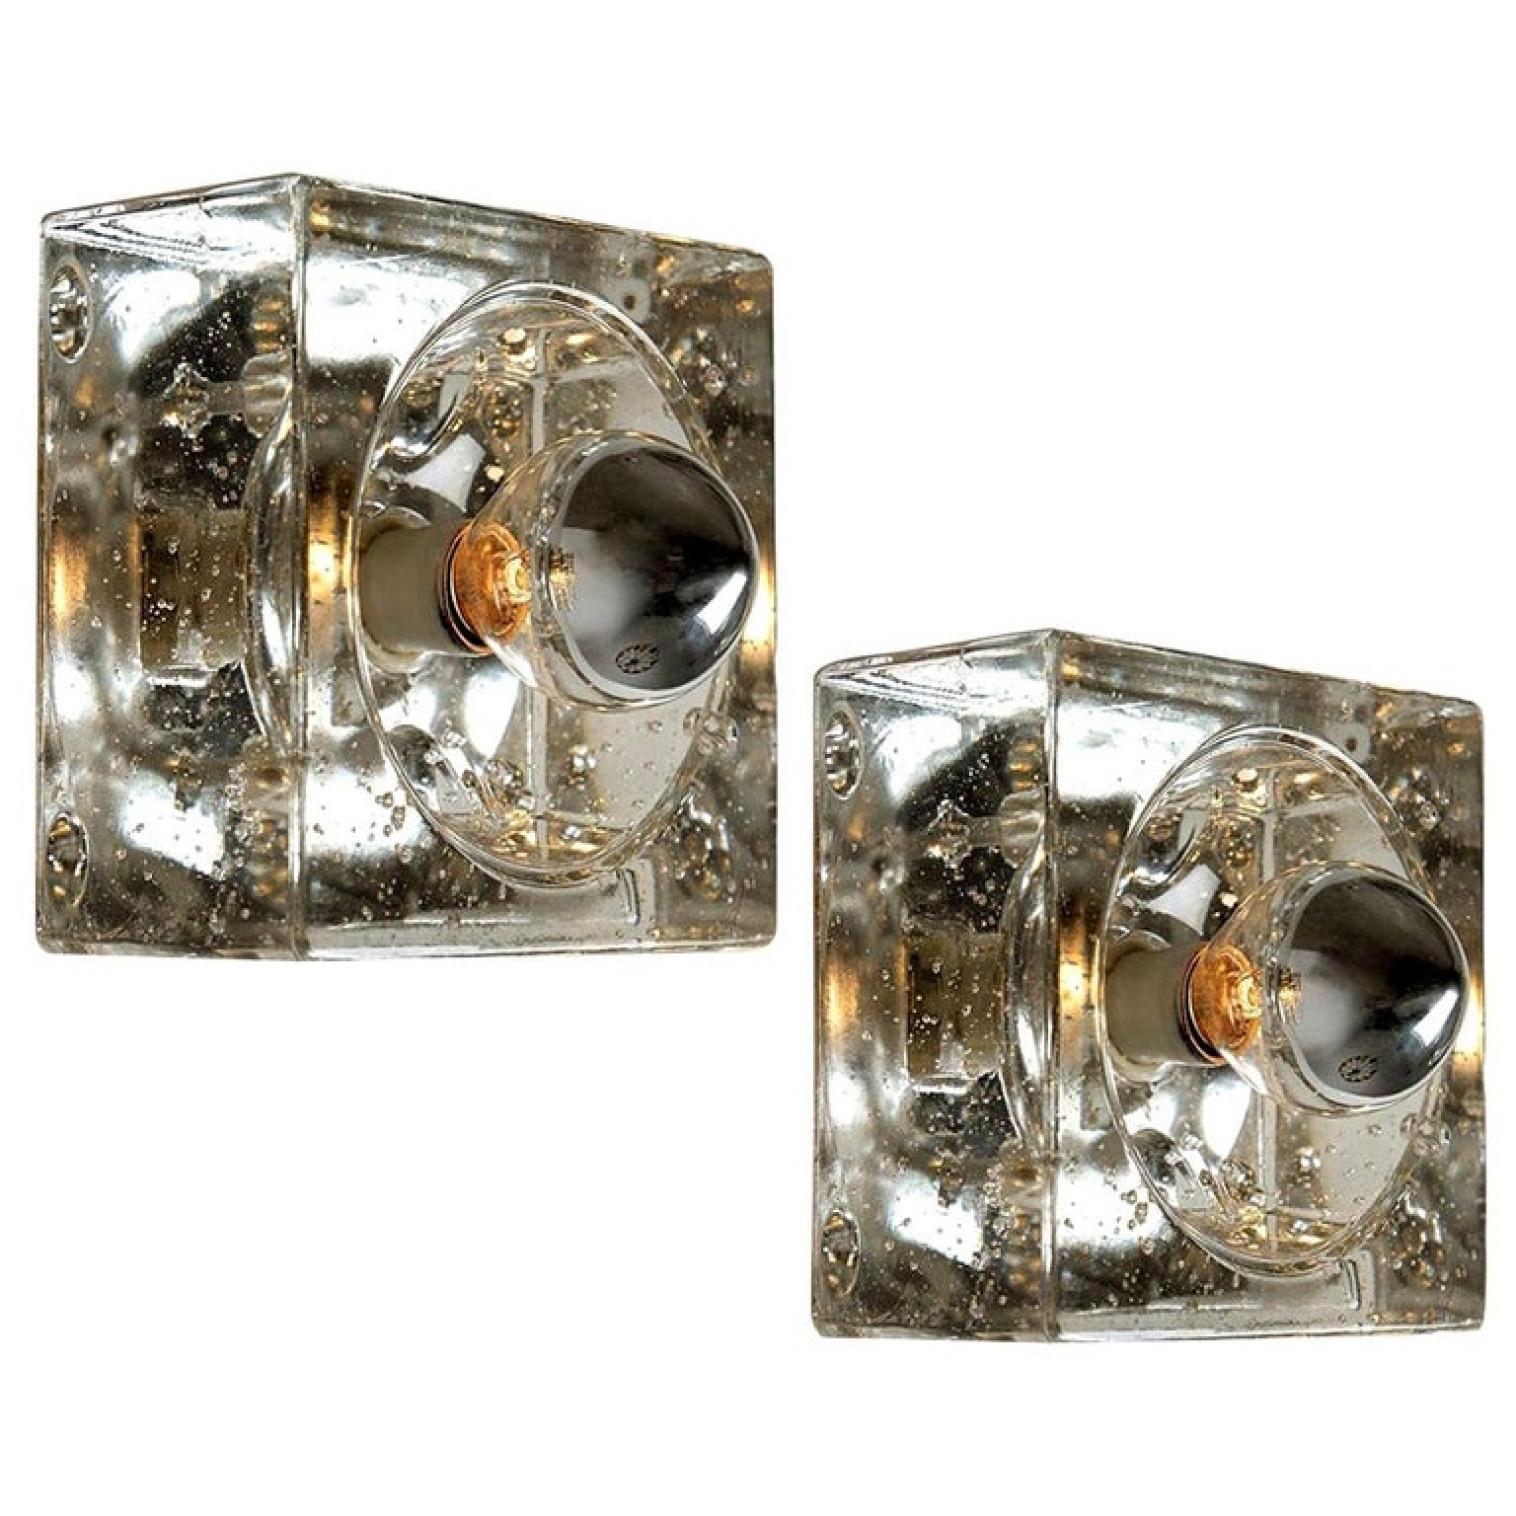 Diese Leuchten sind aus dickem mundgeblasenem Glas auf einer quadratischen silberfarbenen Rückwand gefertigt. Das Glas erzeugt einen schönen Lichteffekt an der Decke oder der Wand. Jede Lampe hat eine E14-Fassung (max. 25 Watt)

Kann für